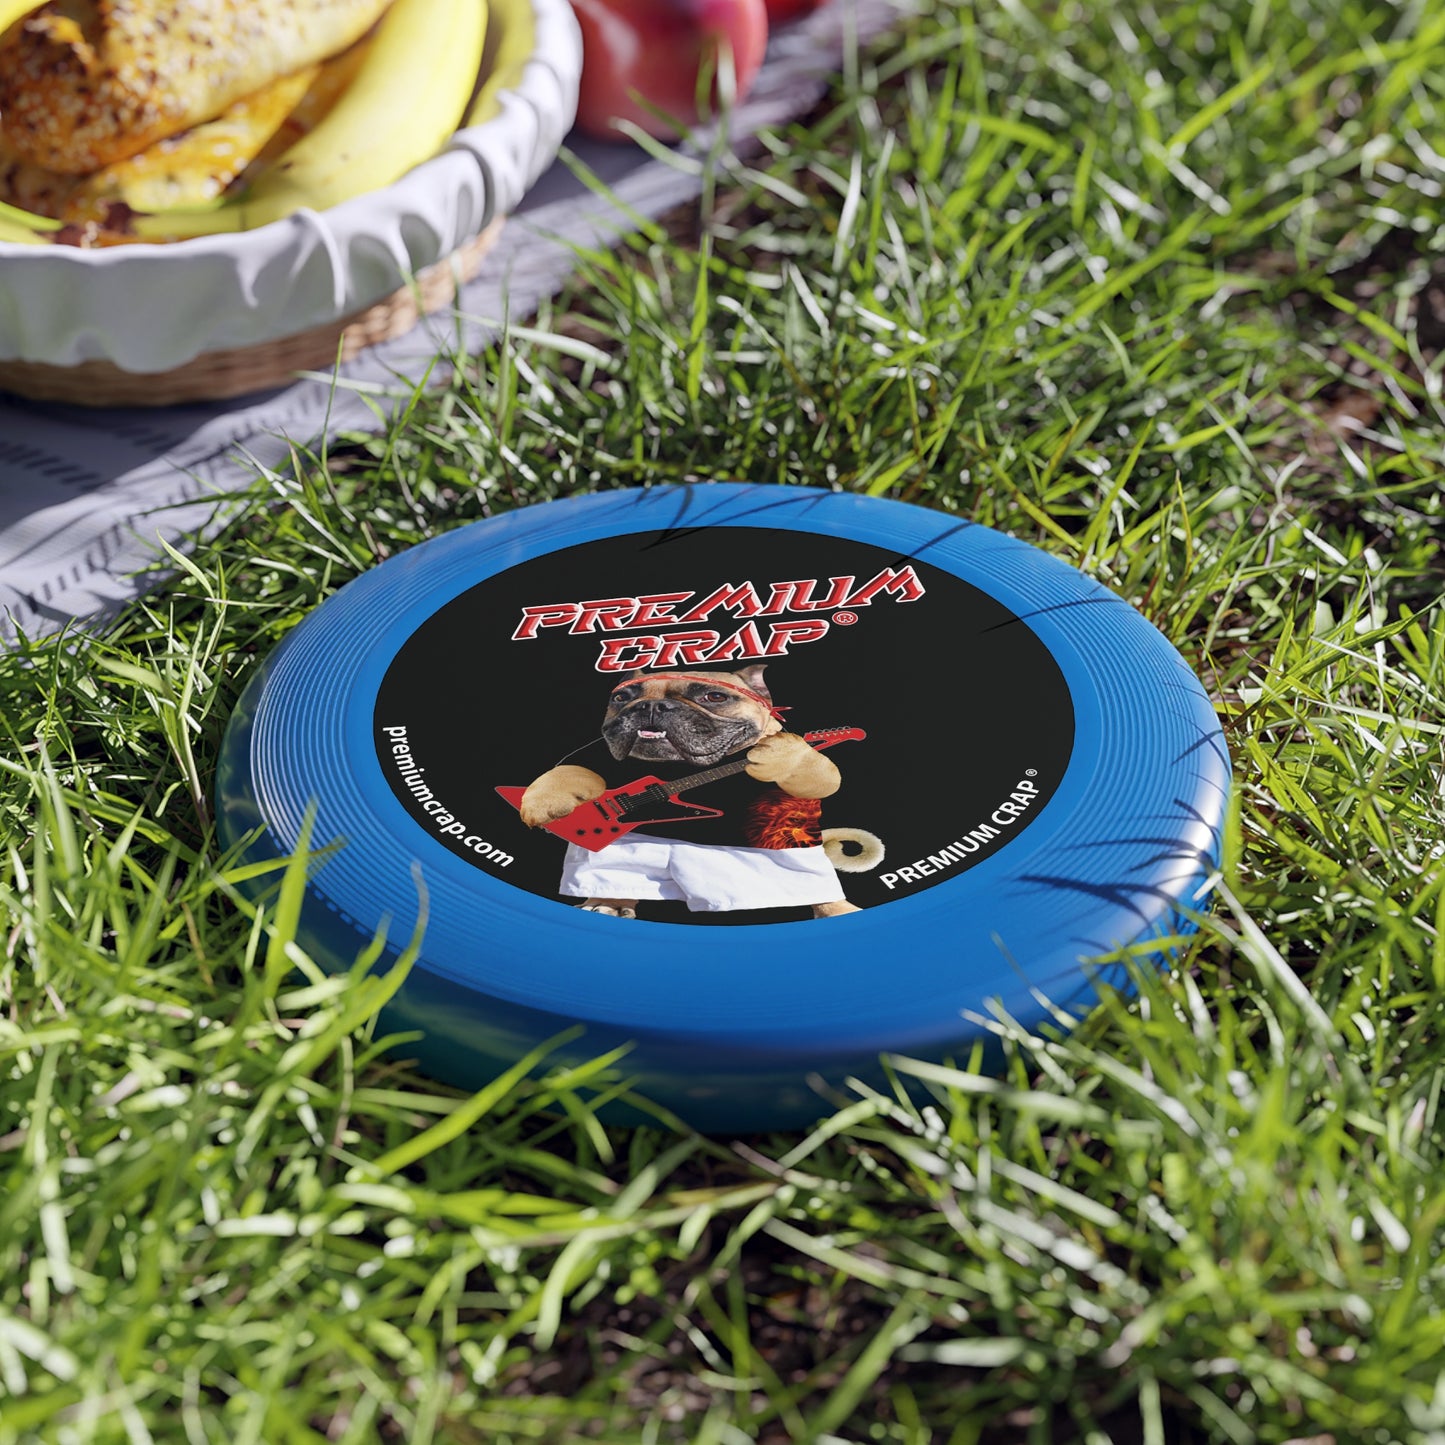 Premium Crap Wham-O Frisbee